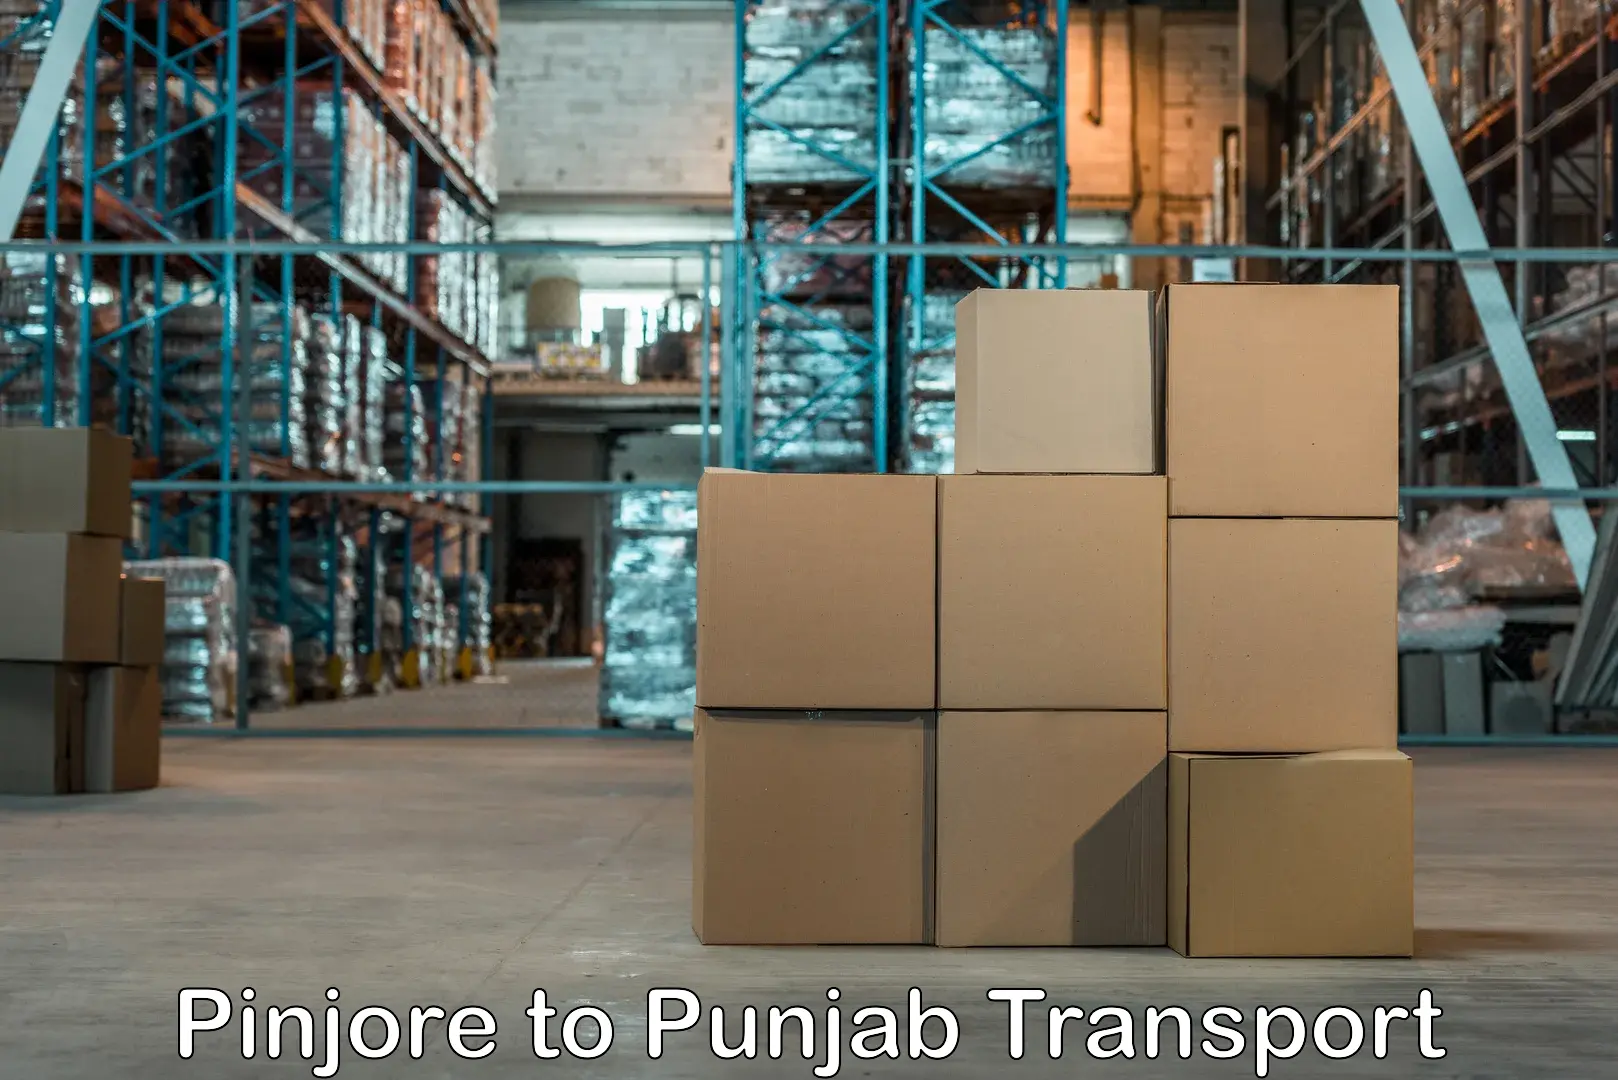 Shipping partner Pinjore to Punjab